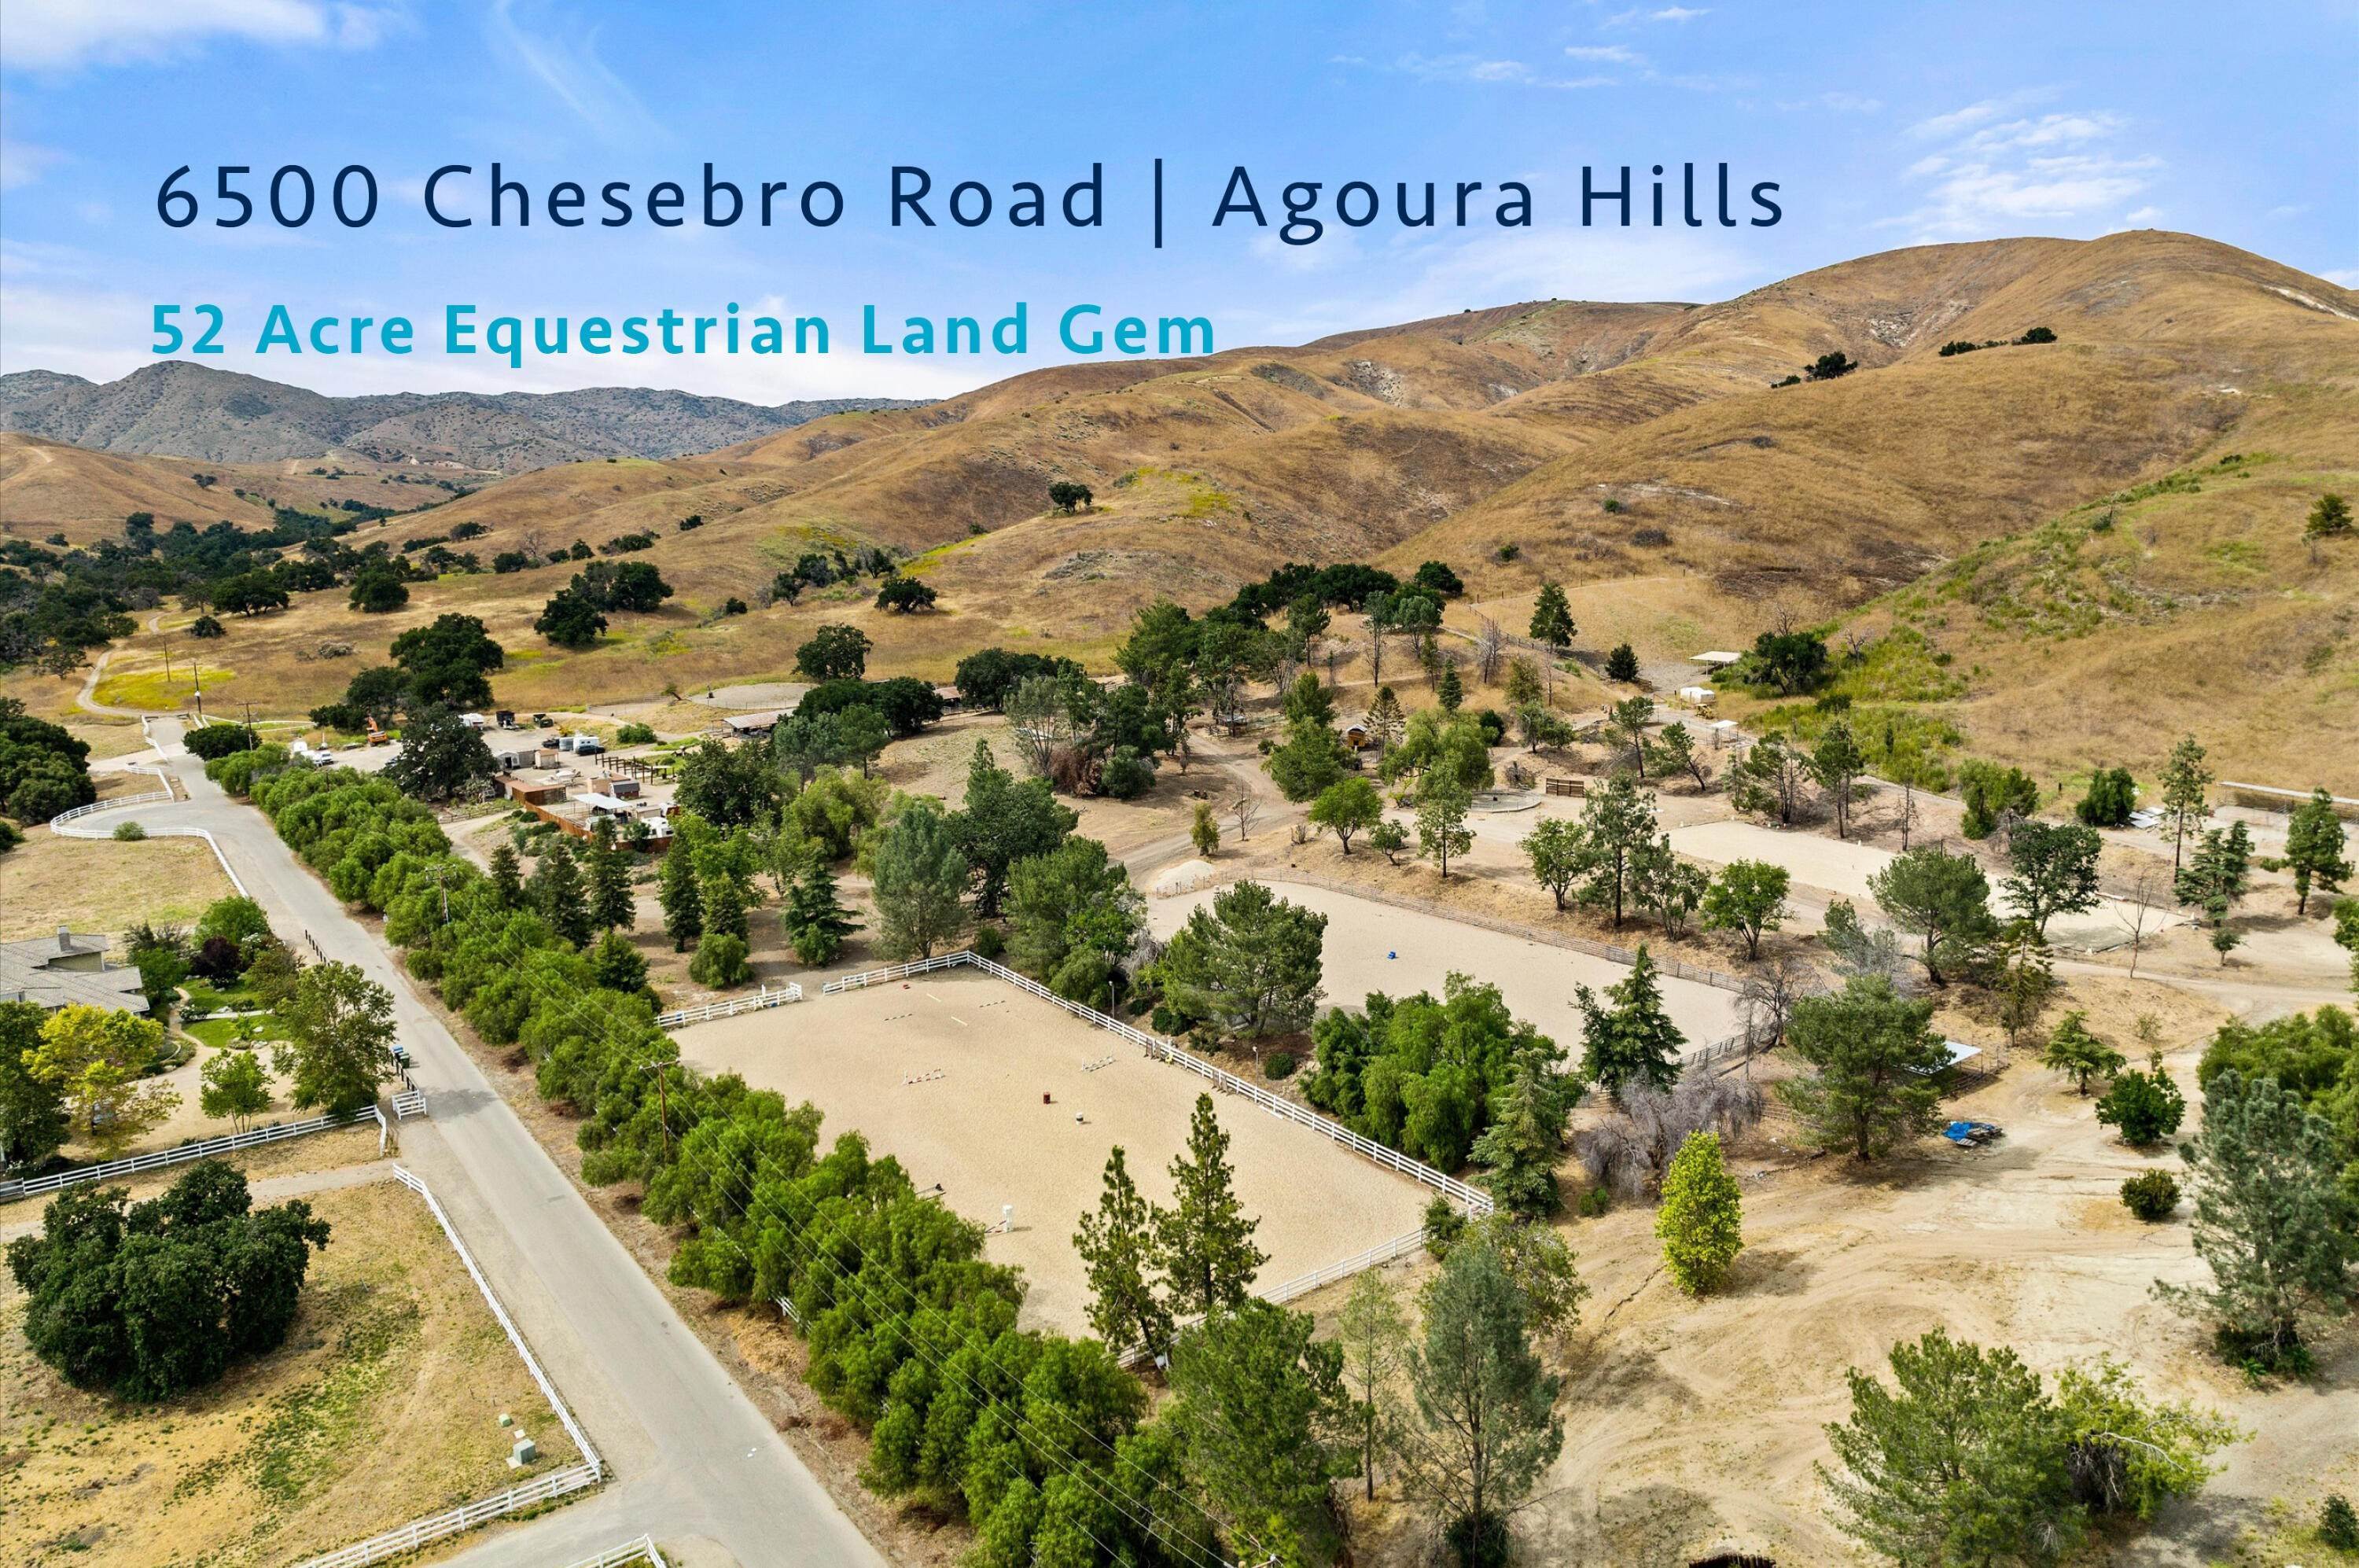 Lotes / Terrenos por un Venta en 6500 Chesebro Road Agoura Hills, California 91301 Estados Unidos